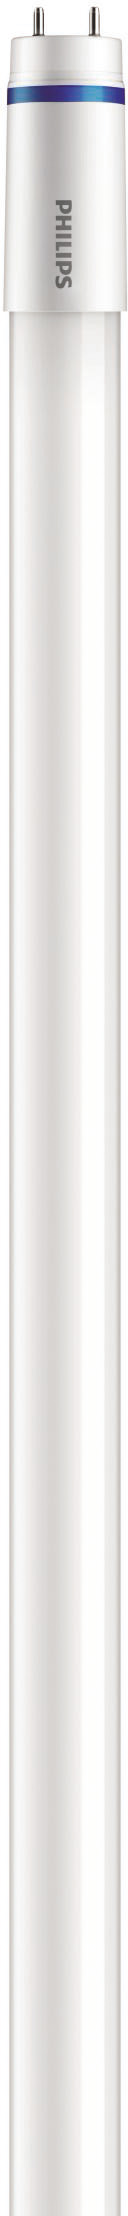 Philips Lighting LED-Tube T8 KVG/VVG G13, 840, 1200mm MASLEDtube #31658400 günstig online kaufen